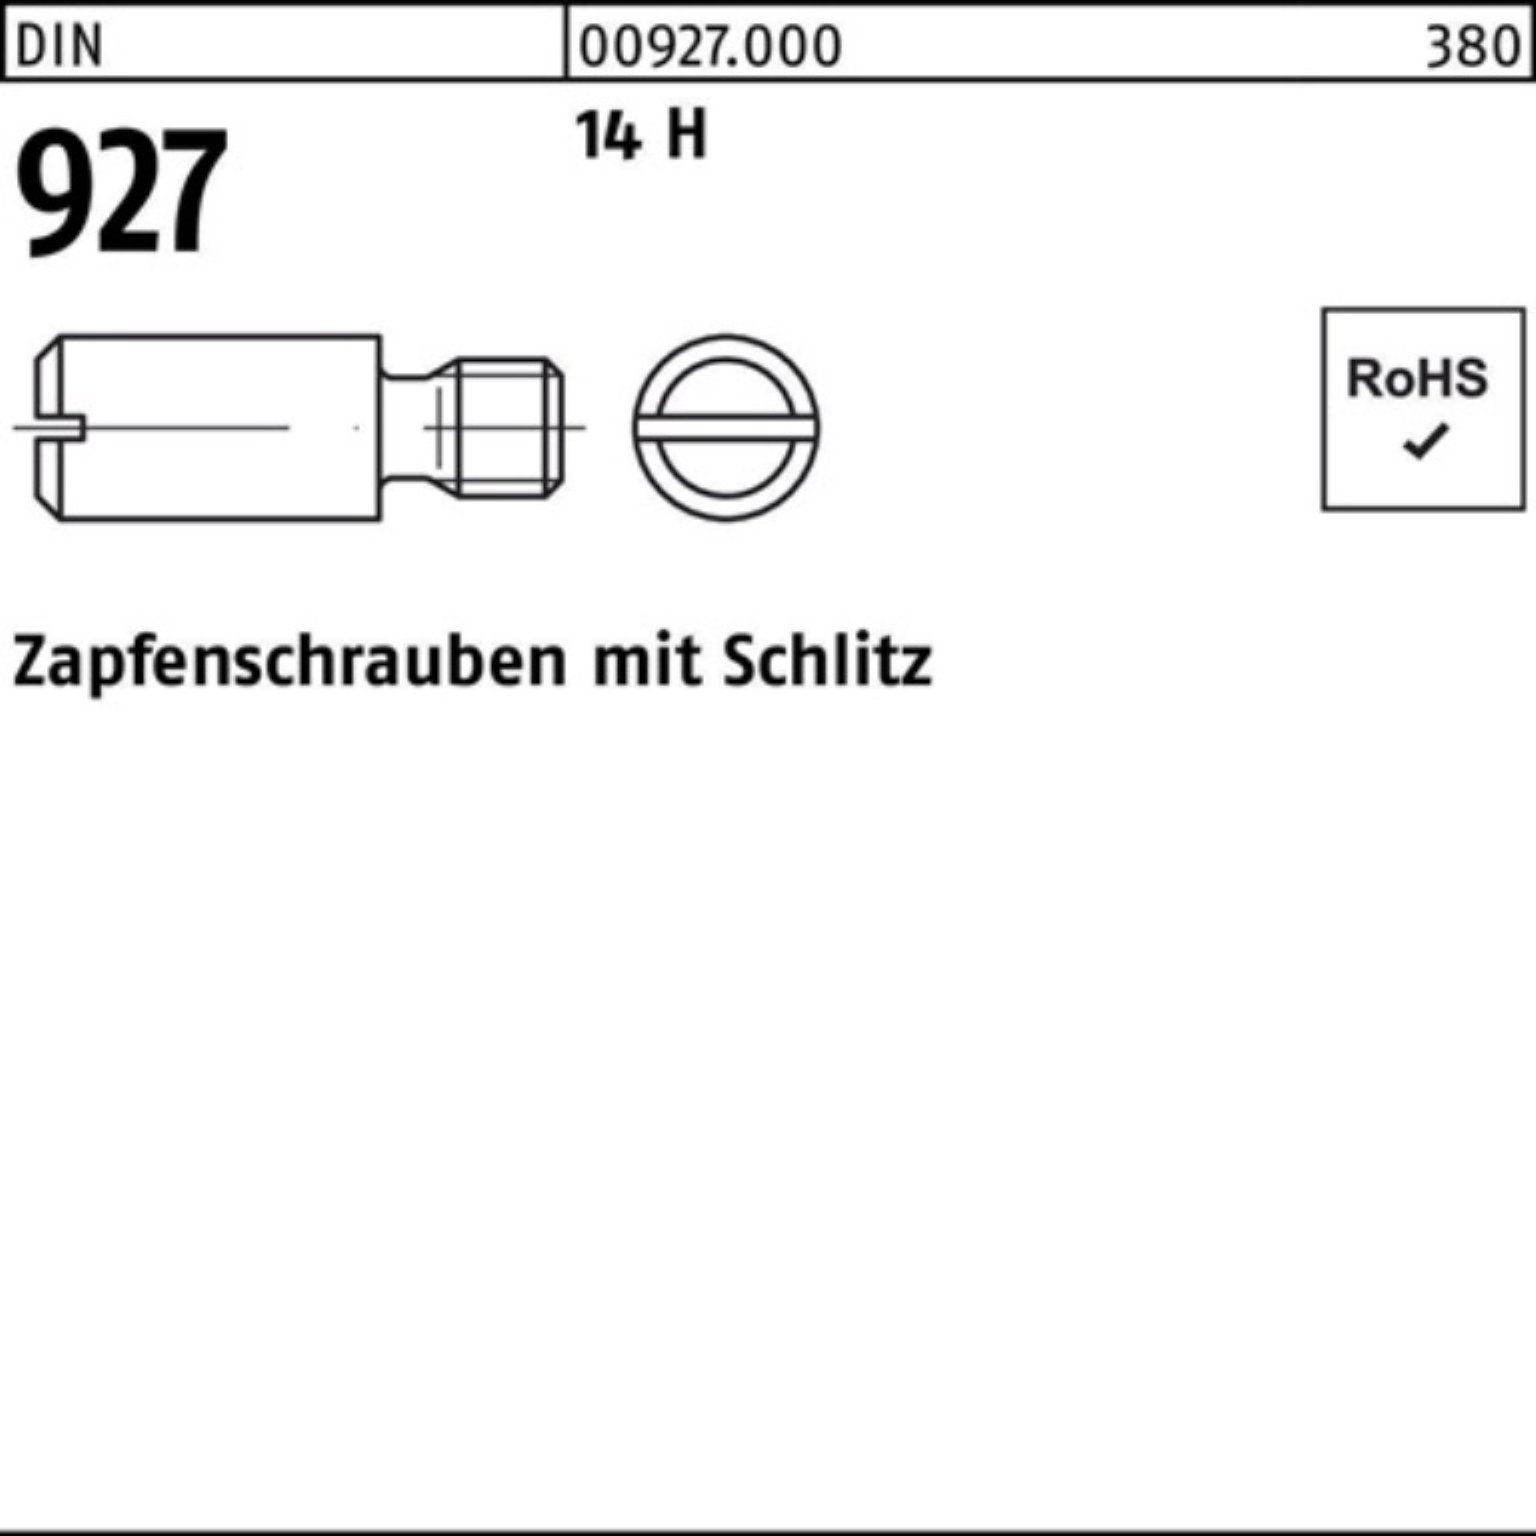 Reyher Schraube 100er DIN DIN 927 Zapfenschraube 100 92 5 Pack Stück M3x 14 H Schlitz